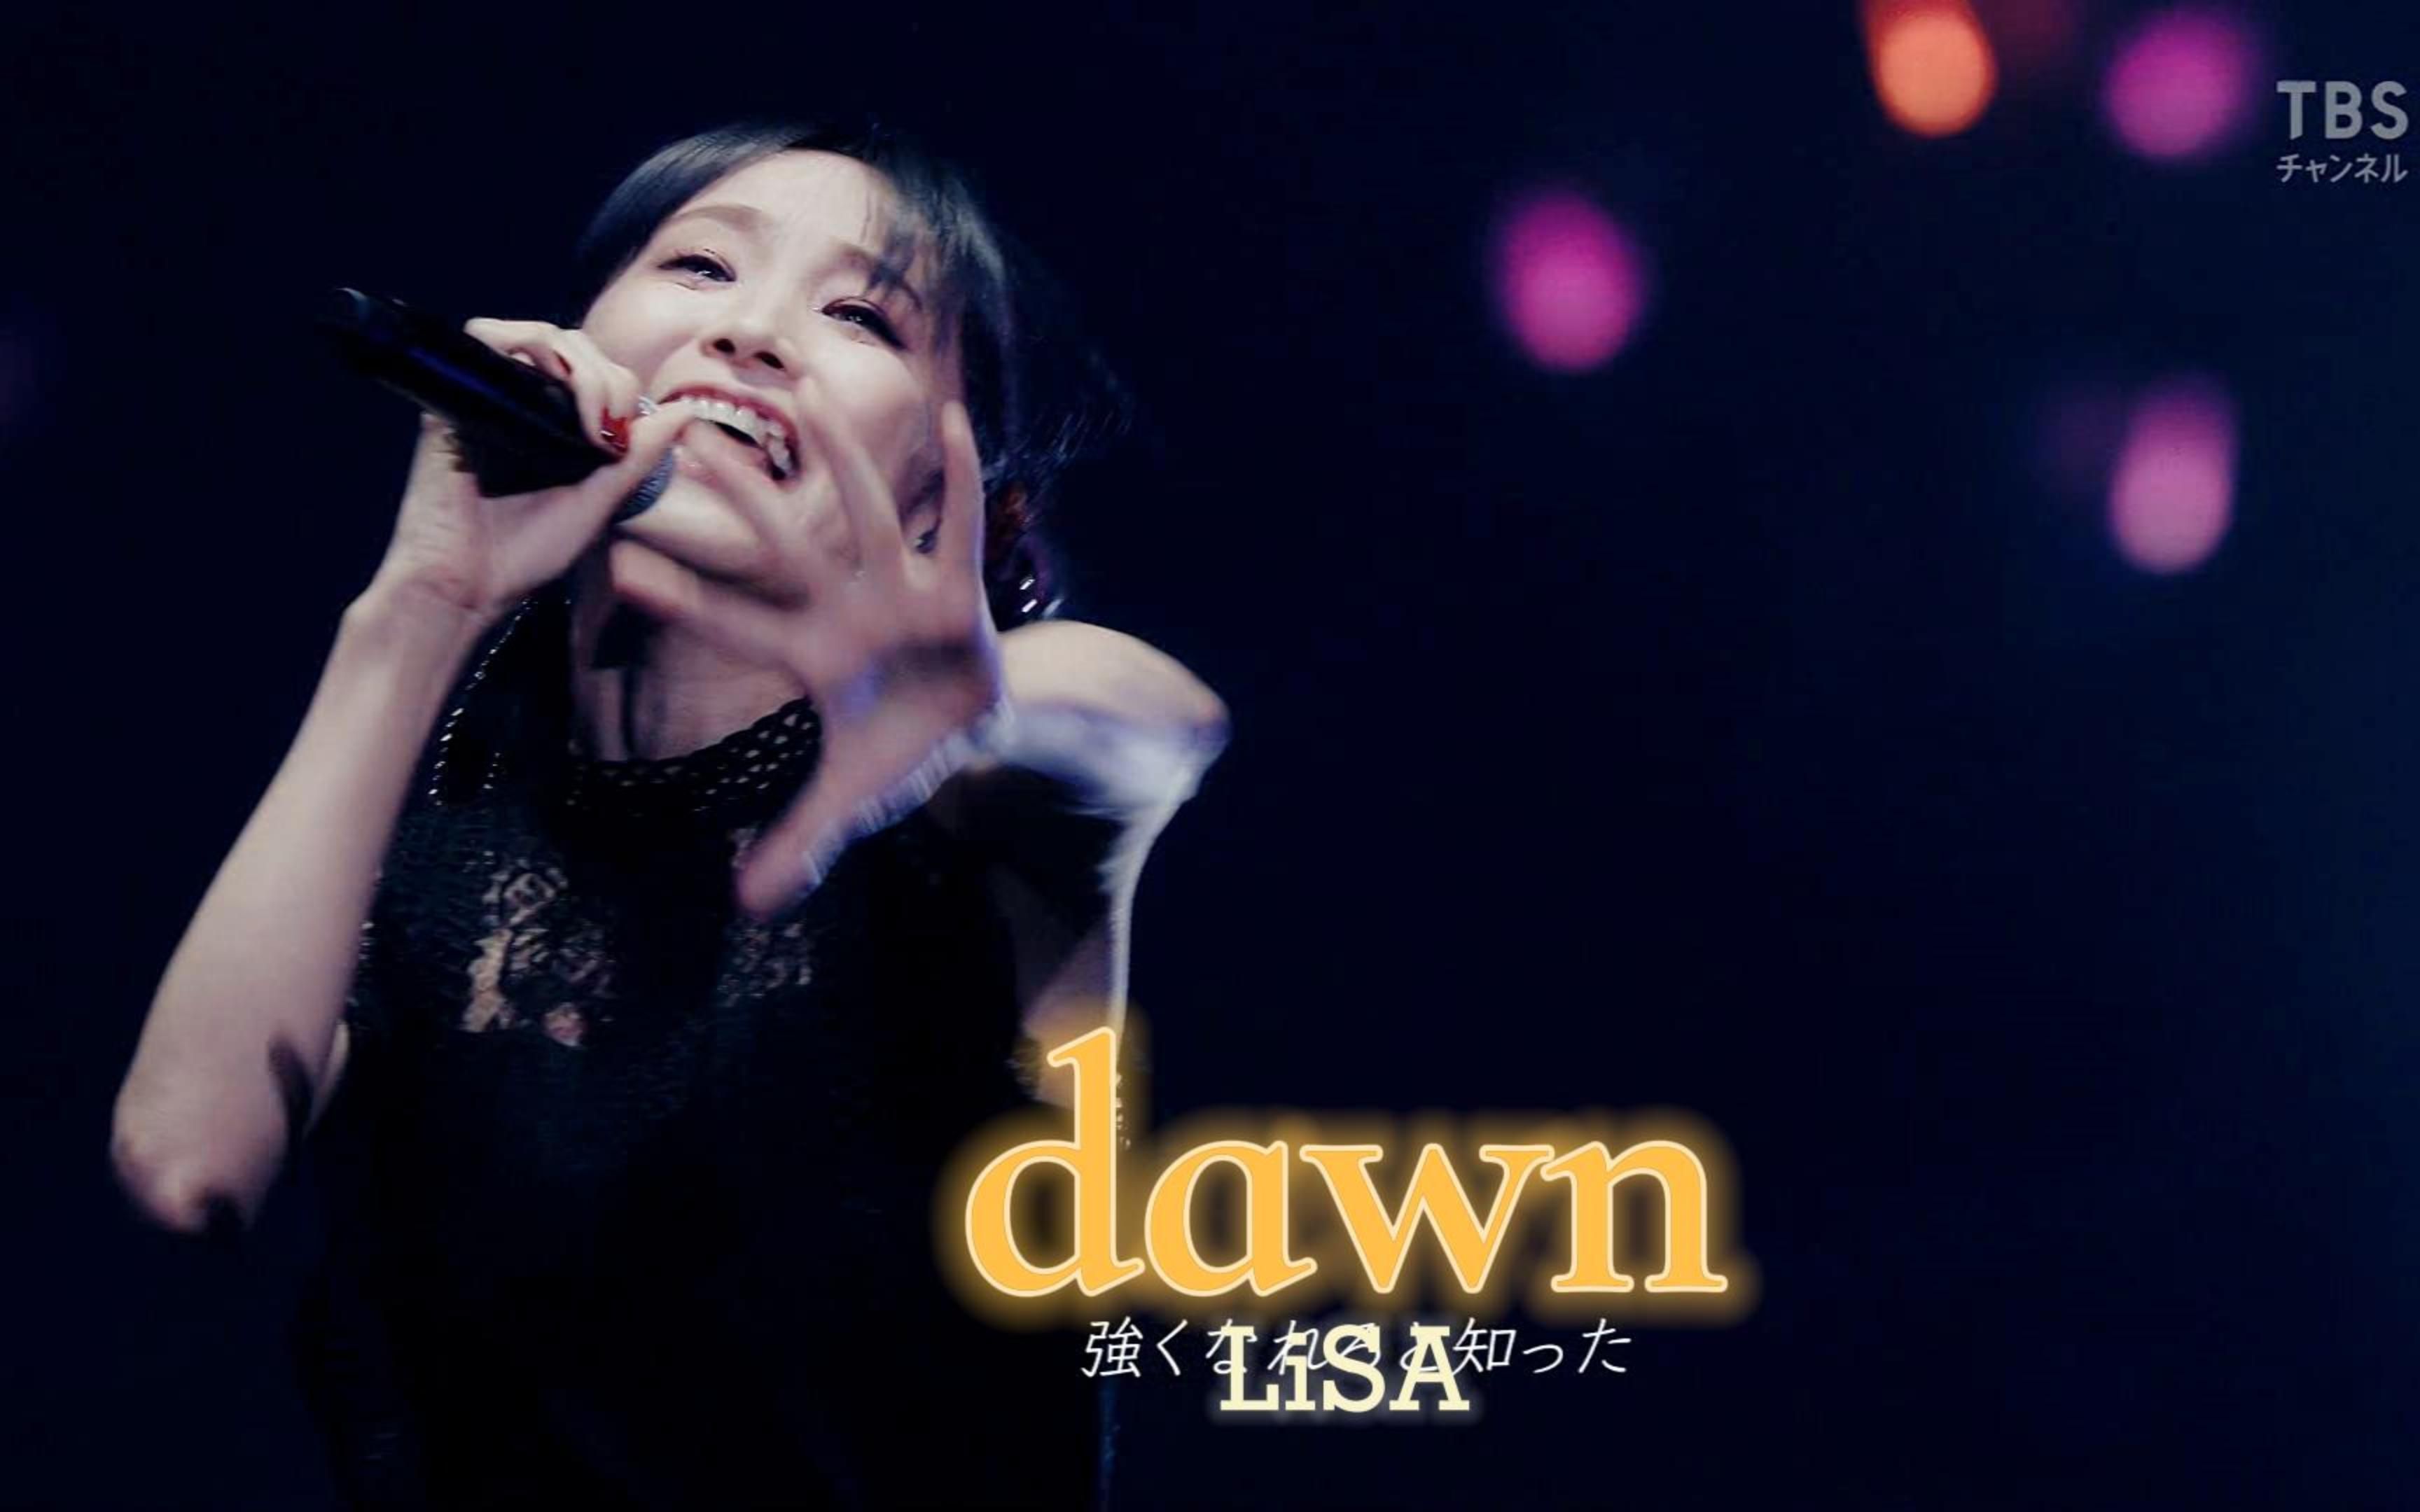 4K【织部里沙】LiSA-『dawn』黎明/曙光